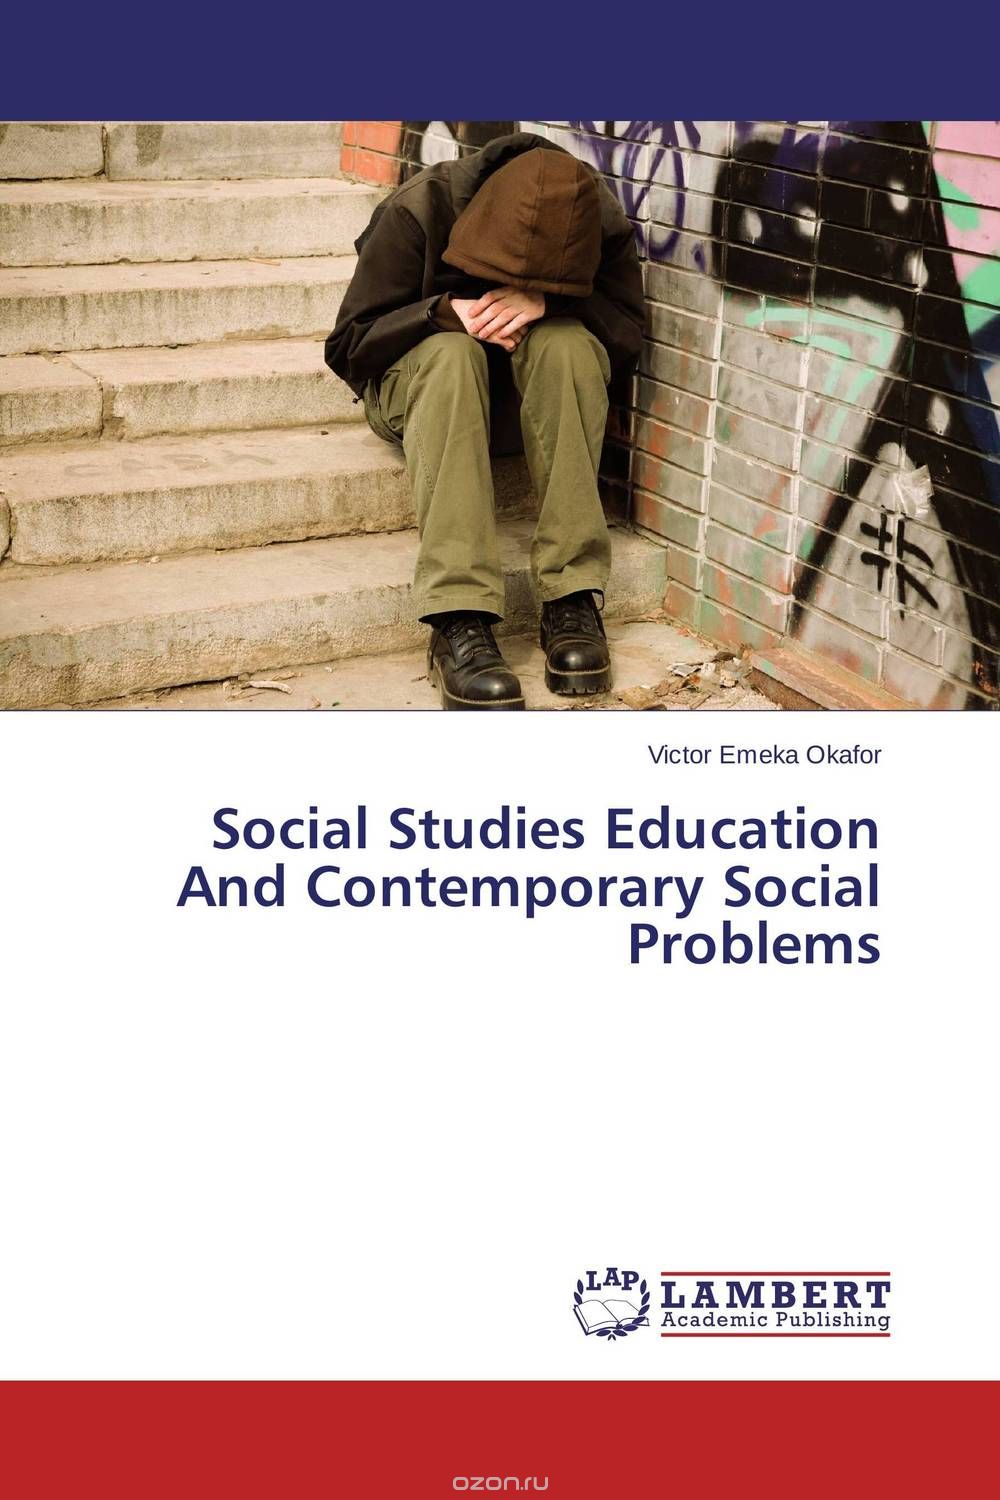 Скачать книгу "Social Studies Education And Contemporary Social Problems"